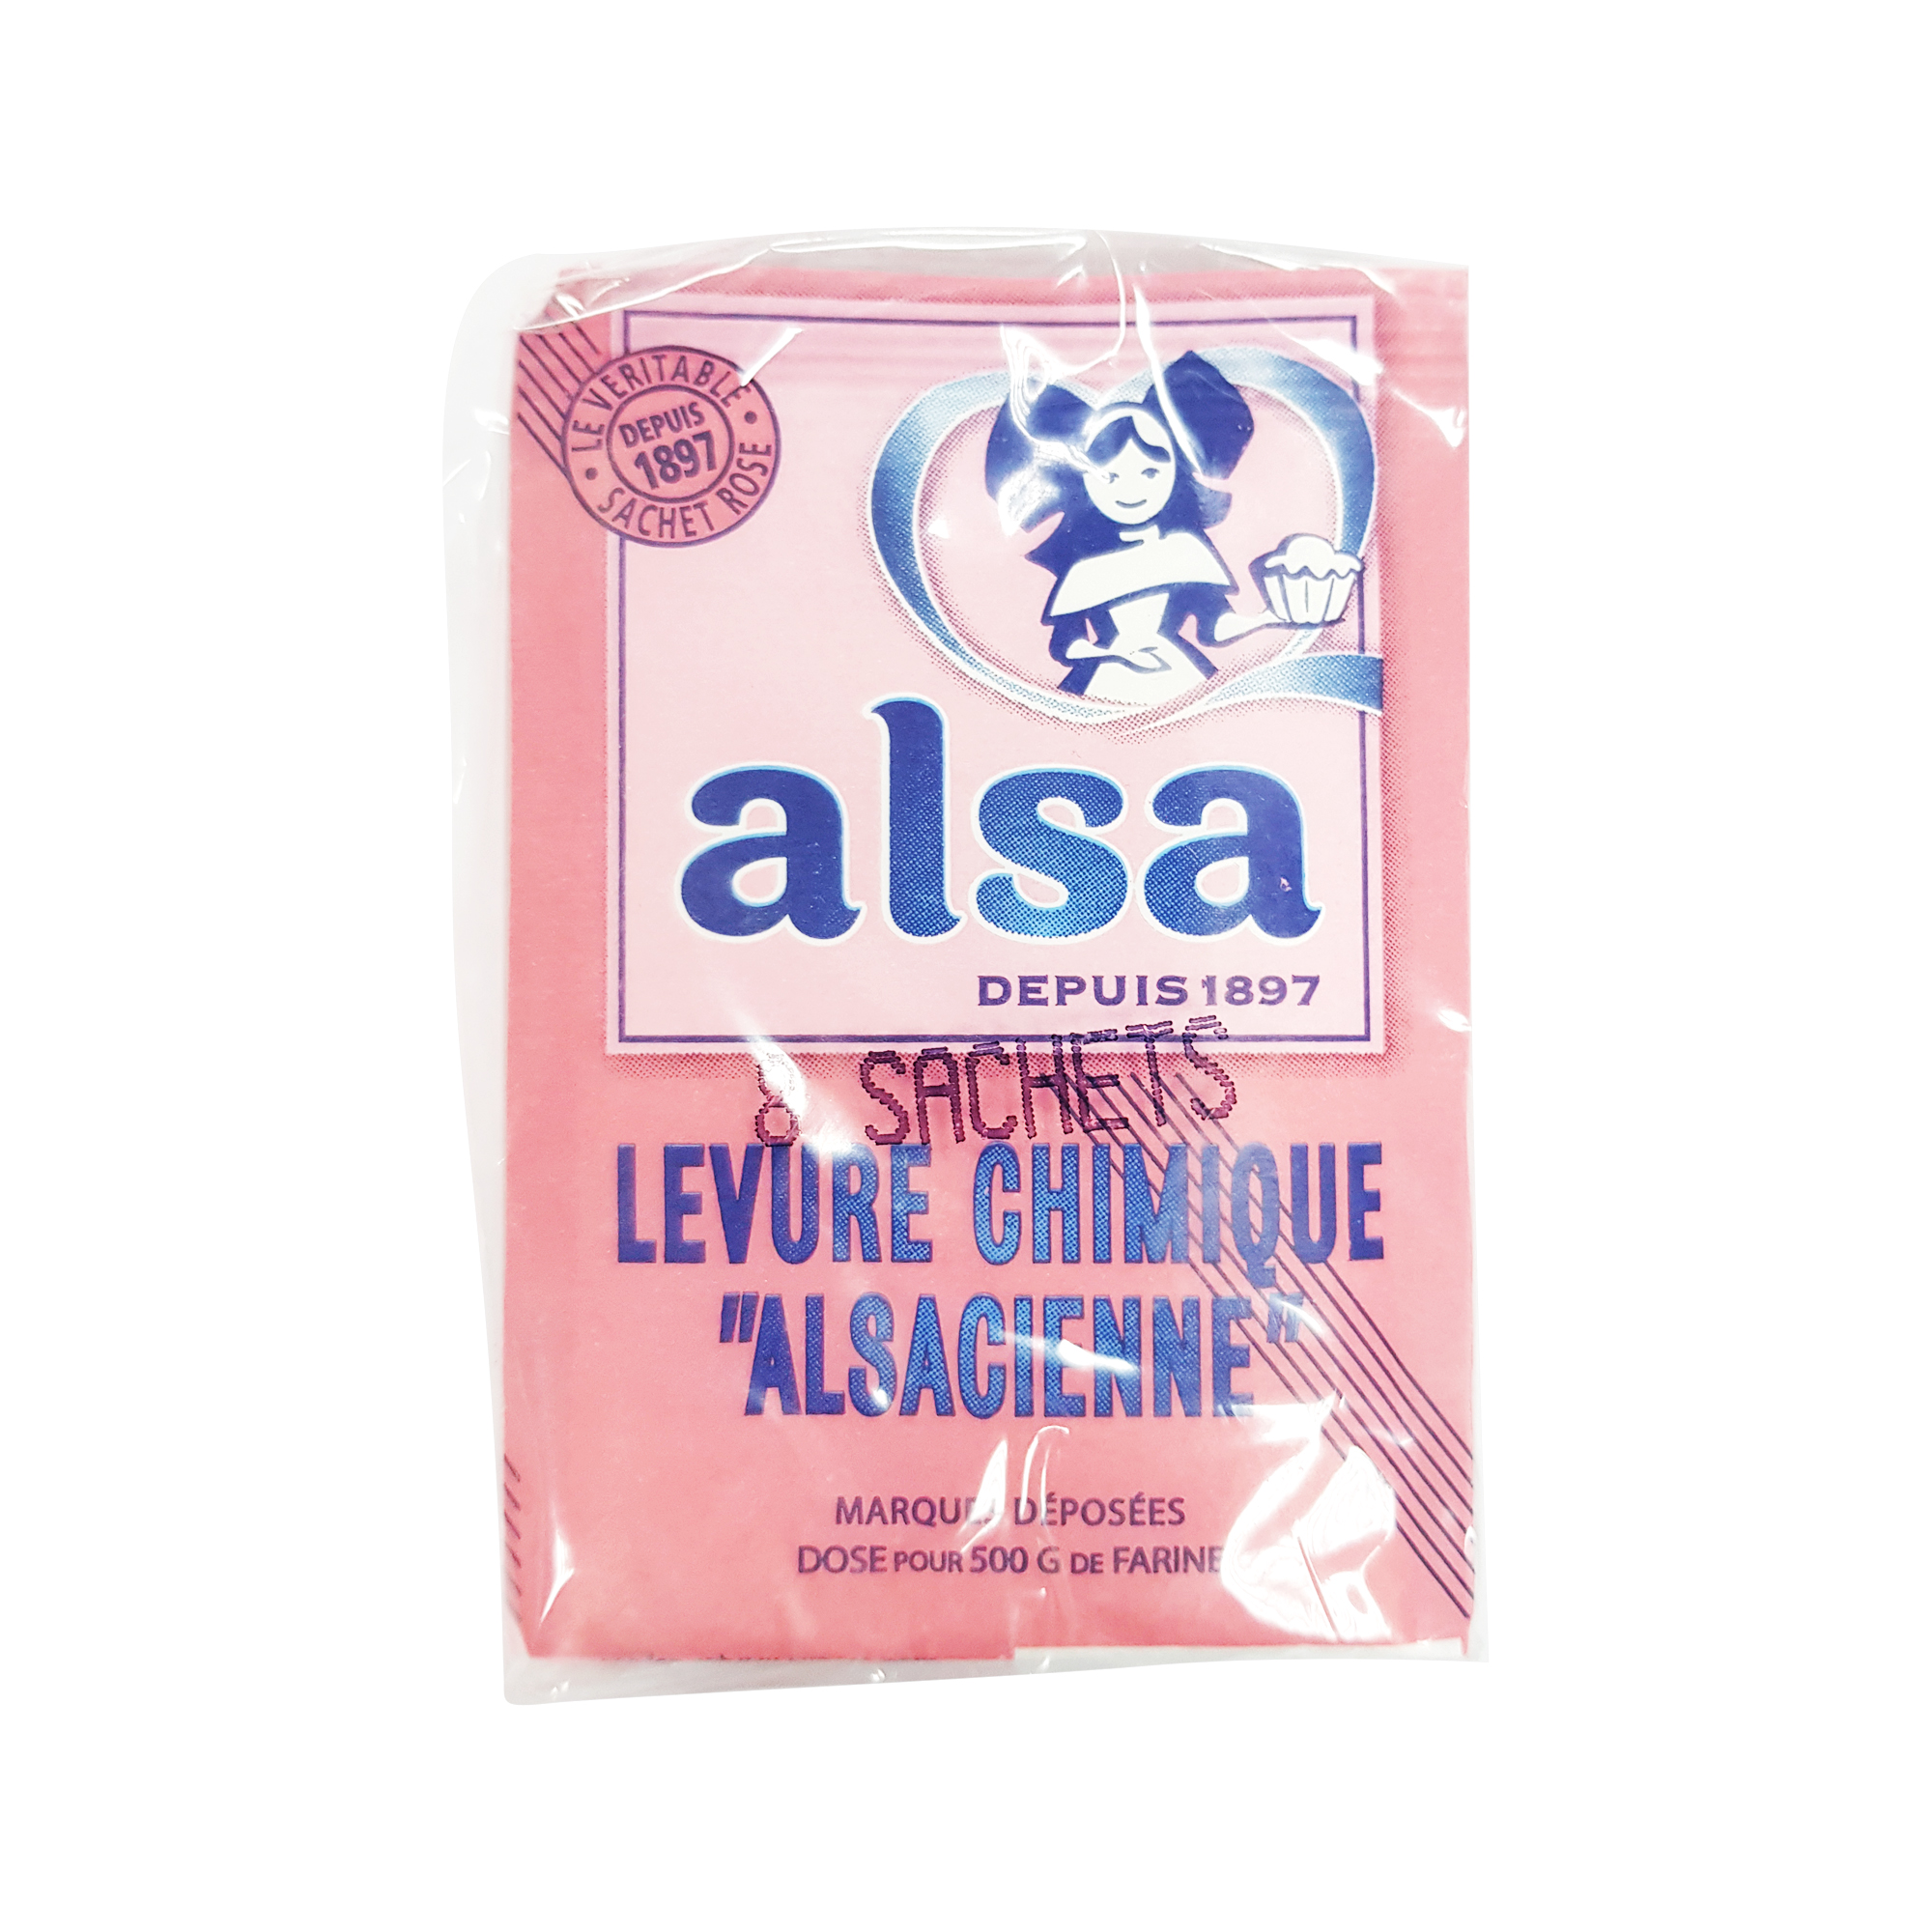 Alsa Baking Powder (8x11g)